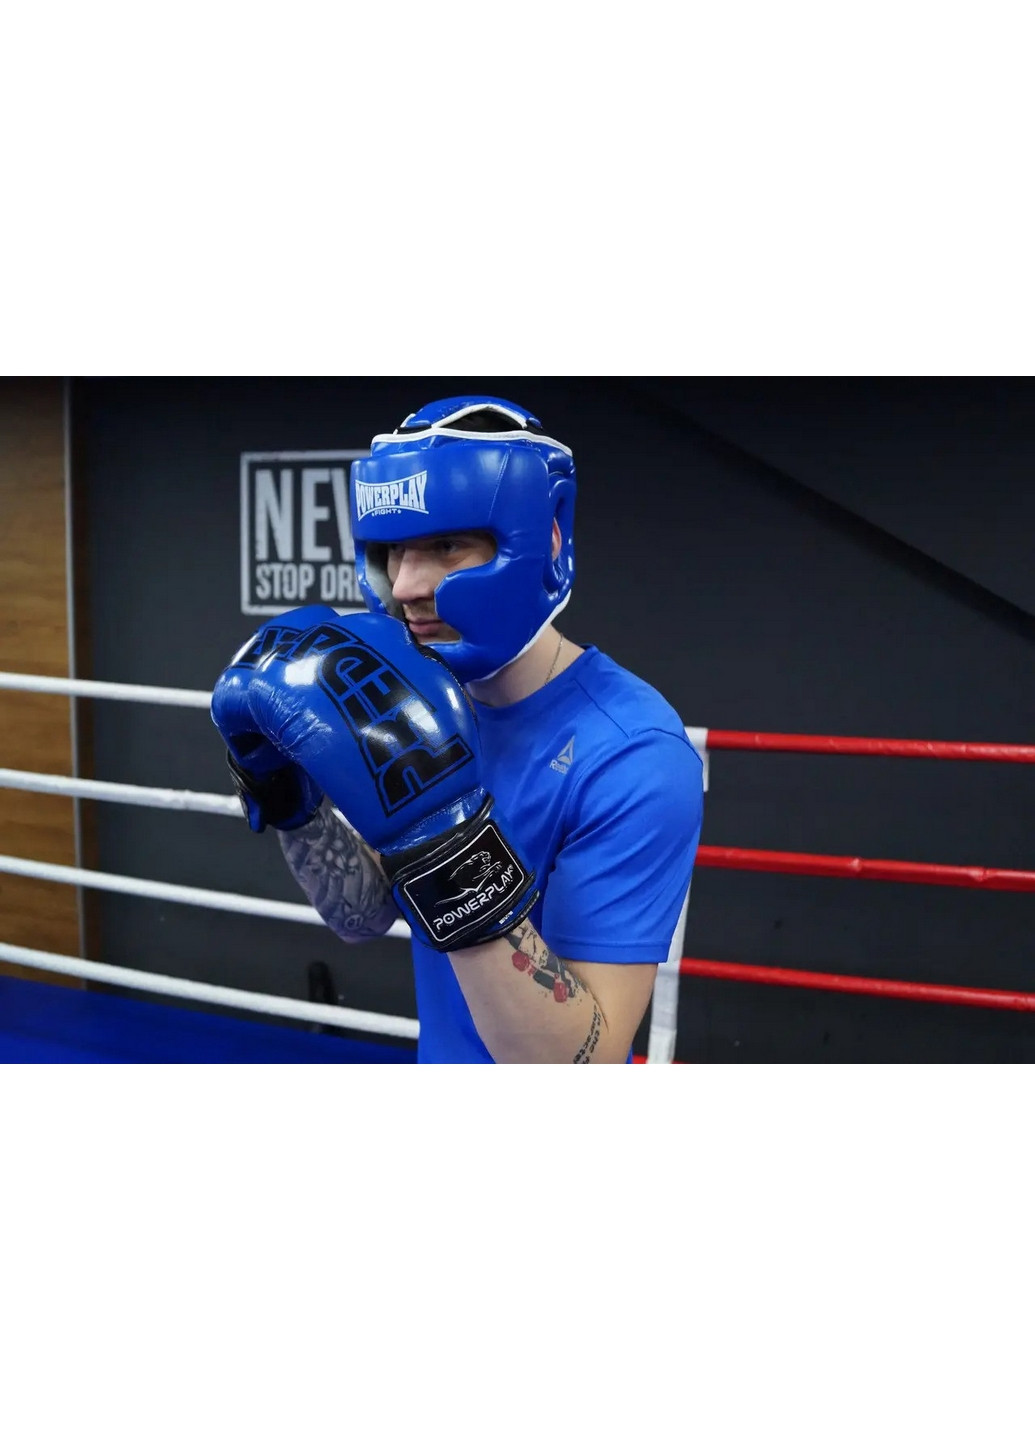 Боксерский шлем тренировочный XL PowerPlay (260515134)